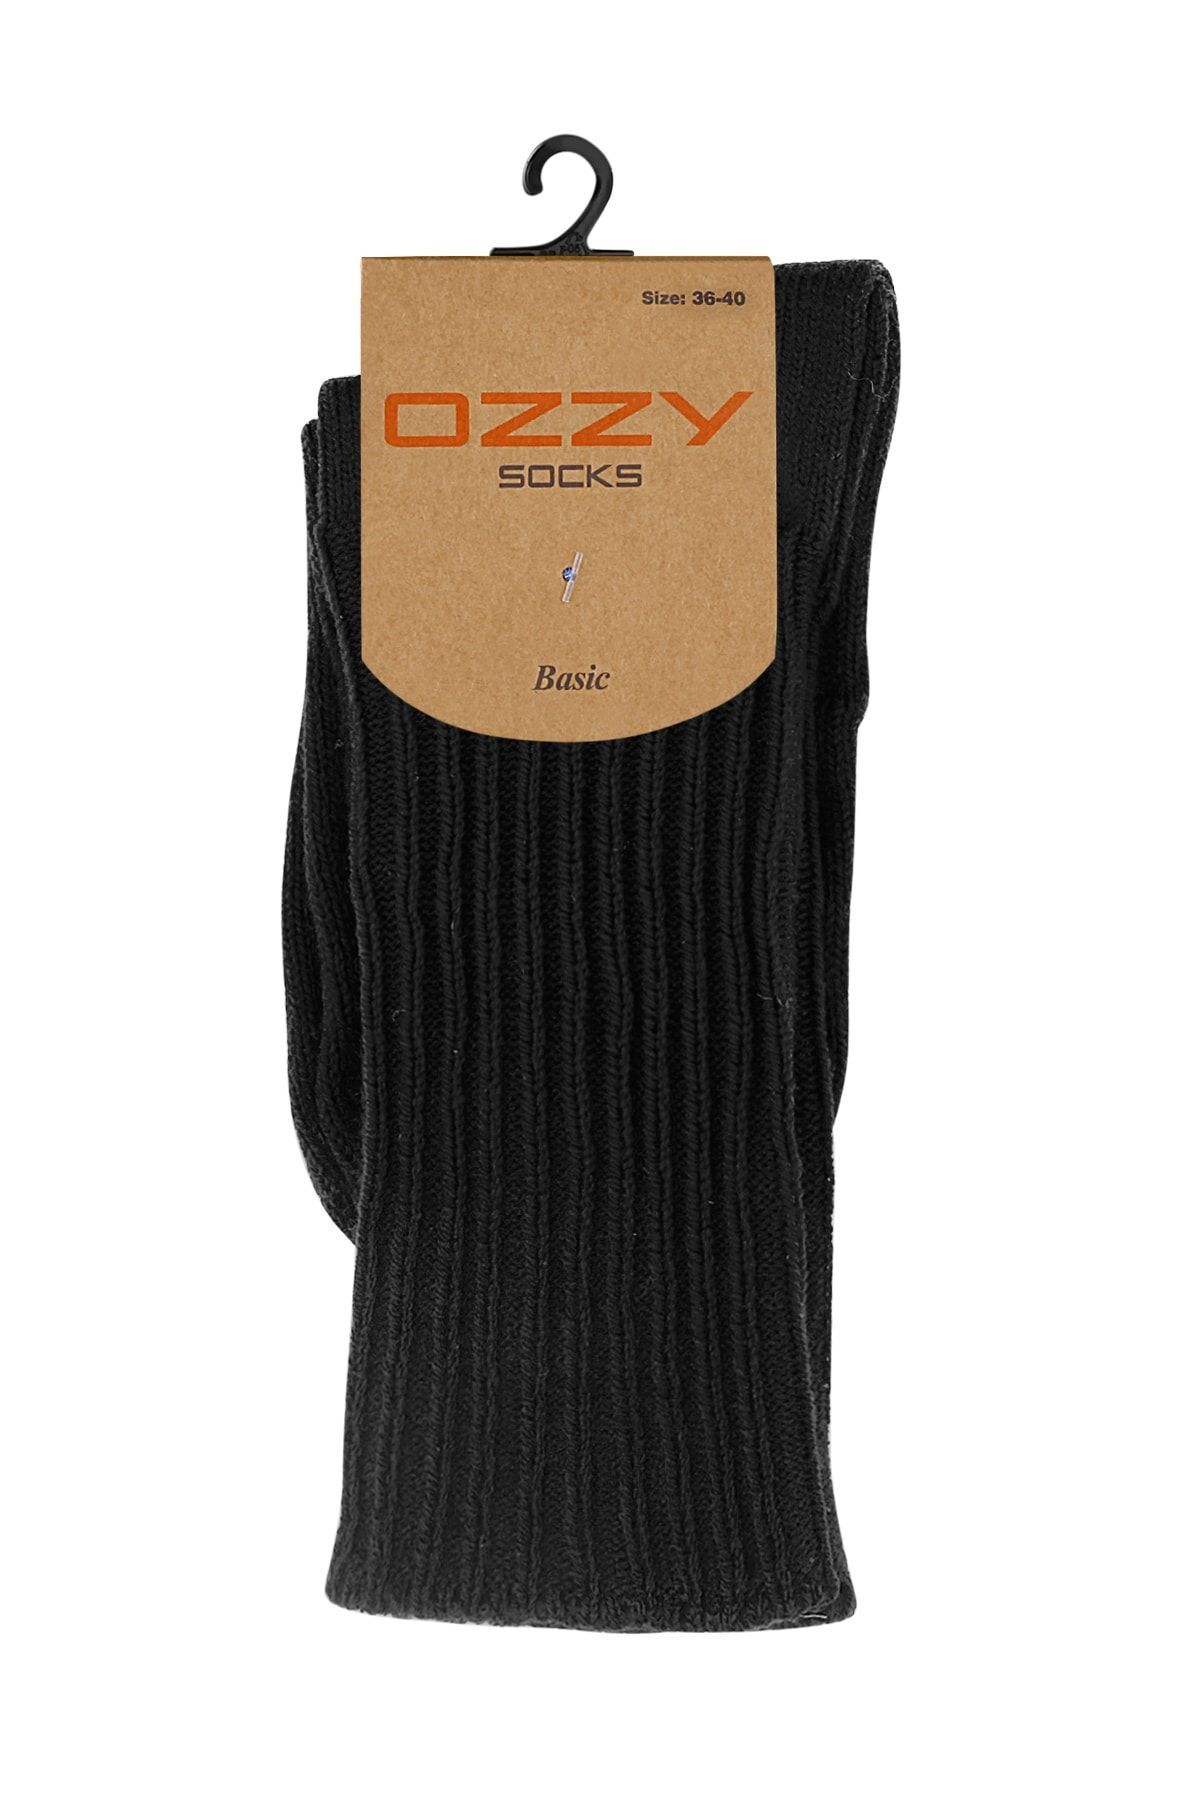 Ozzy Socks Kışlık Kadın Yünlü Siyah Renk Uyku Çorabı Soft Touch